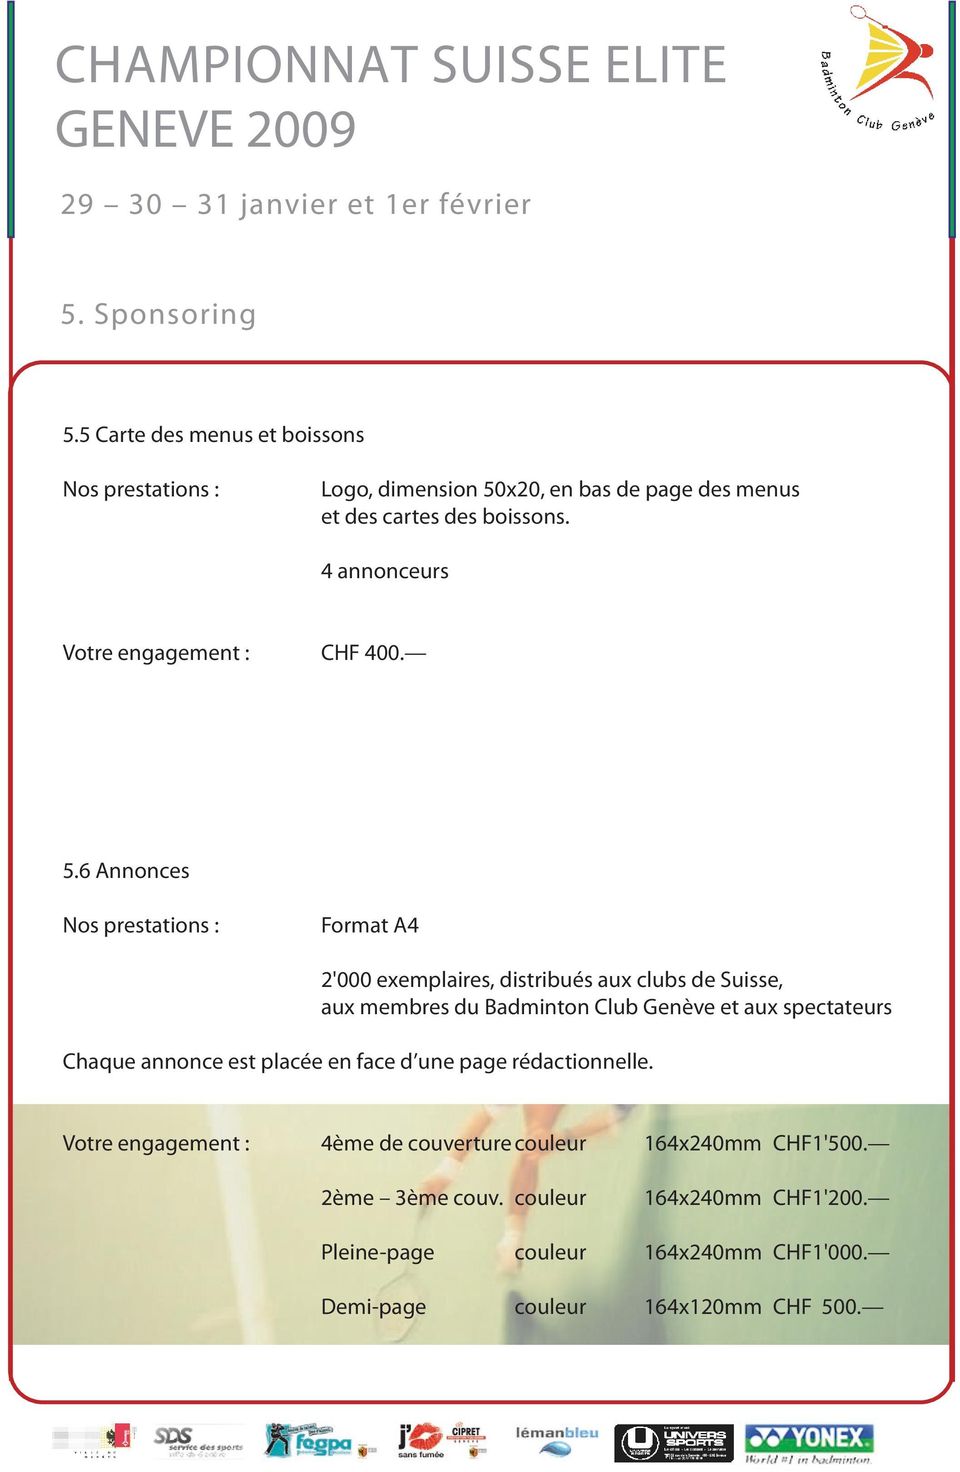 6 Annonces Nos prestations : Format A4 2'000 exemplaires, distribués aux clubs de Suisse, aux membres du Badminton Club Genève et aux